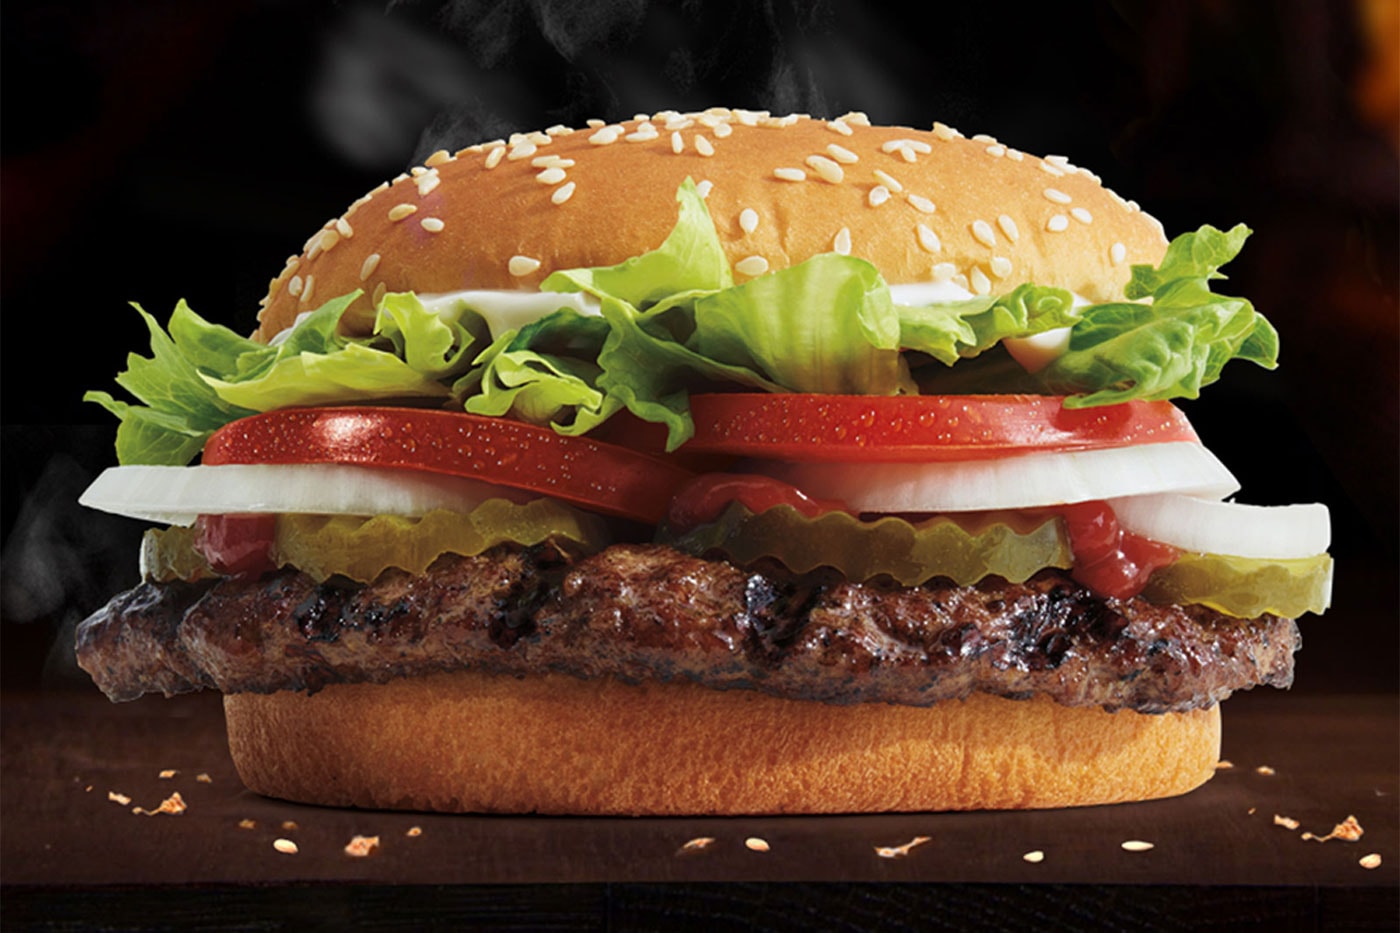 米バーガーキングの広告がワッパーを実物より大きく見せていると訴えられる Customer Sues Burger King for Claiming Whopper Is Smaller Than Advertised fast food f&b bacon double cheeseburger inflation 